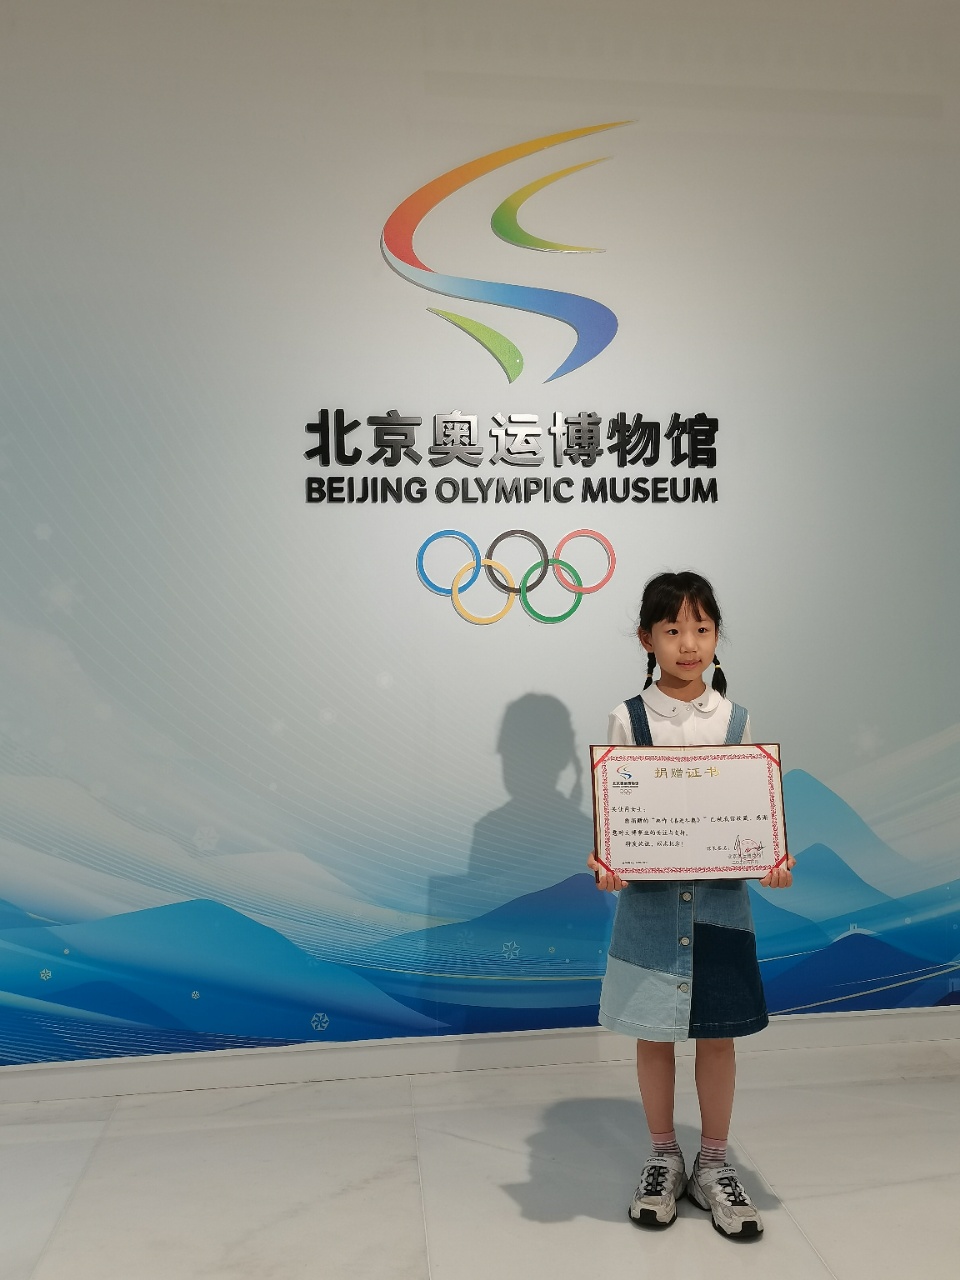 《喜迎冬奥》儿童画作捐赠北京奥运博物馆